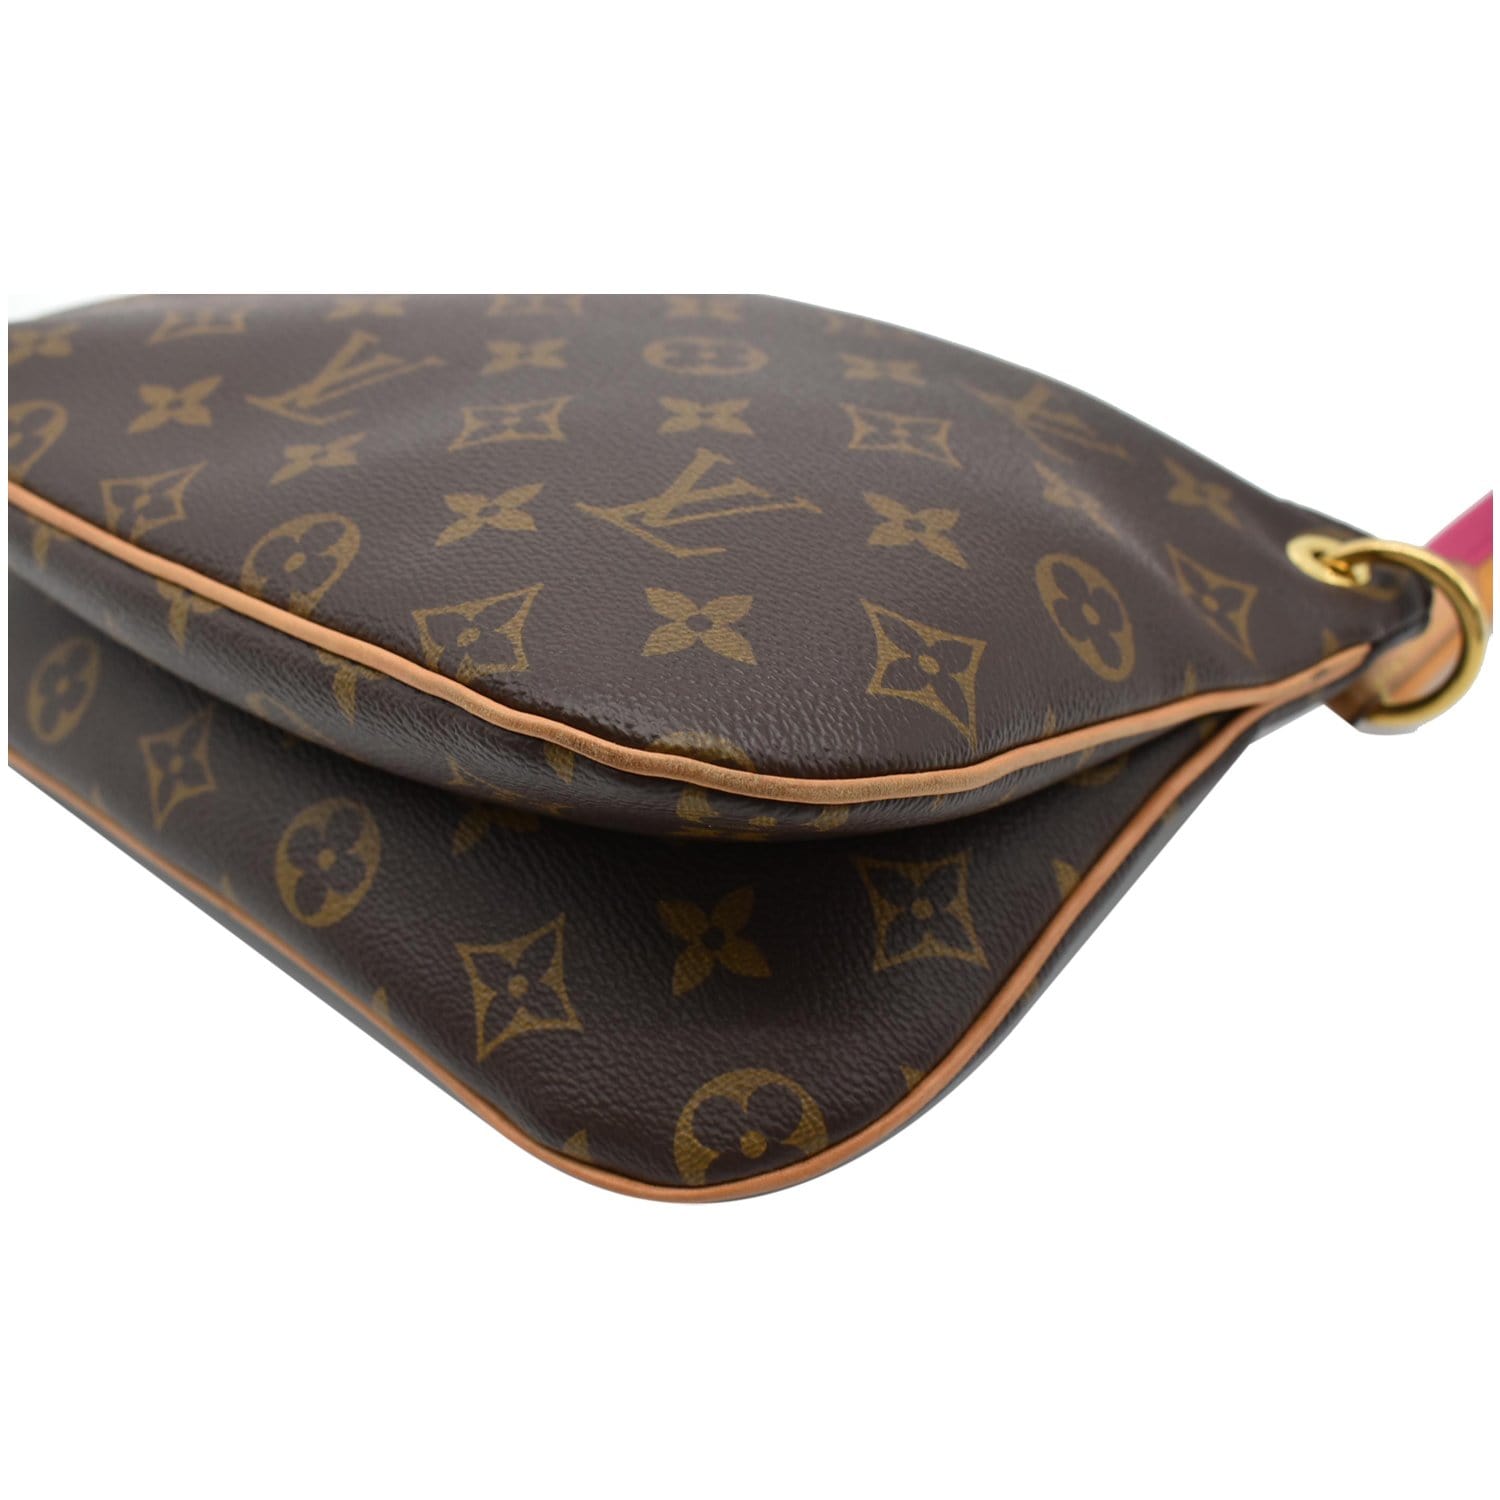 Louis Vuitton Lorette Monogram Canvas Shoulder Bag Brown